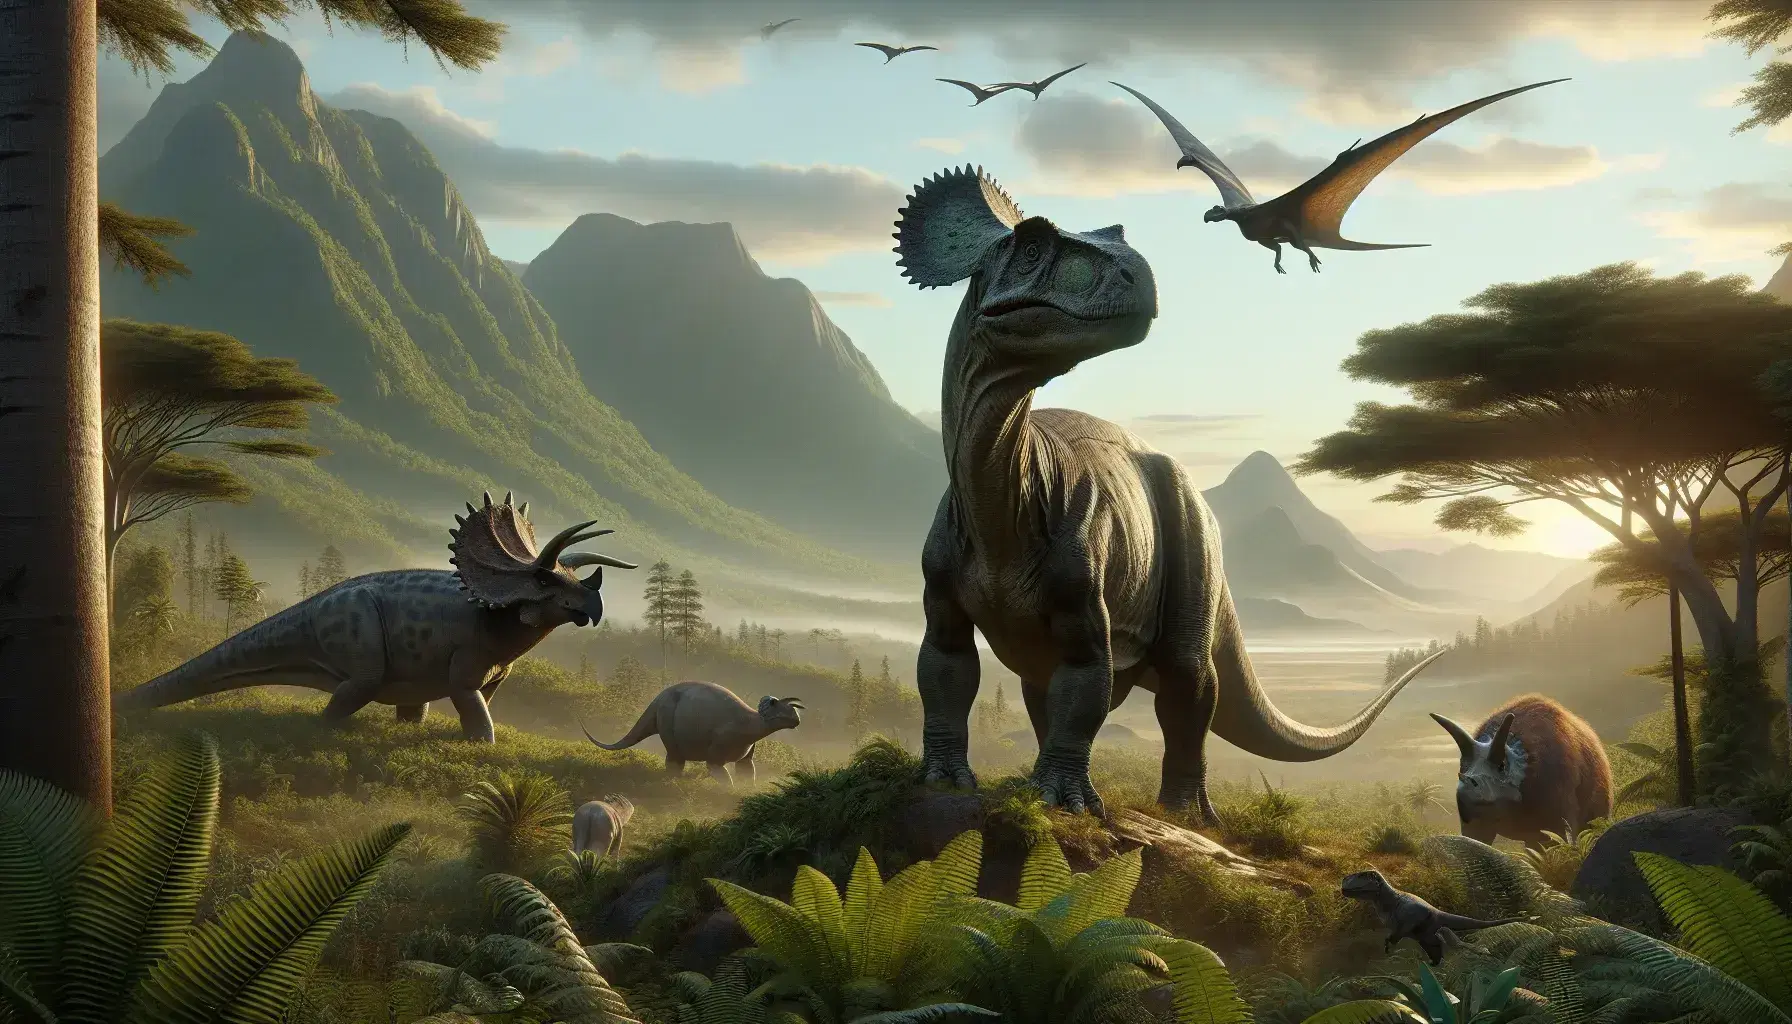 Paesaggio preistorico con Apatosaurus, Triceratops, Pterosauri in volo, Velociraptor tra felci, alberi lussureggianti e tramonto montano.